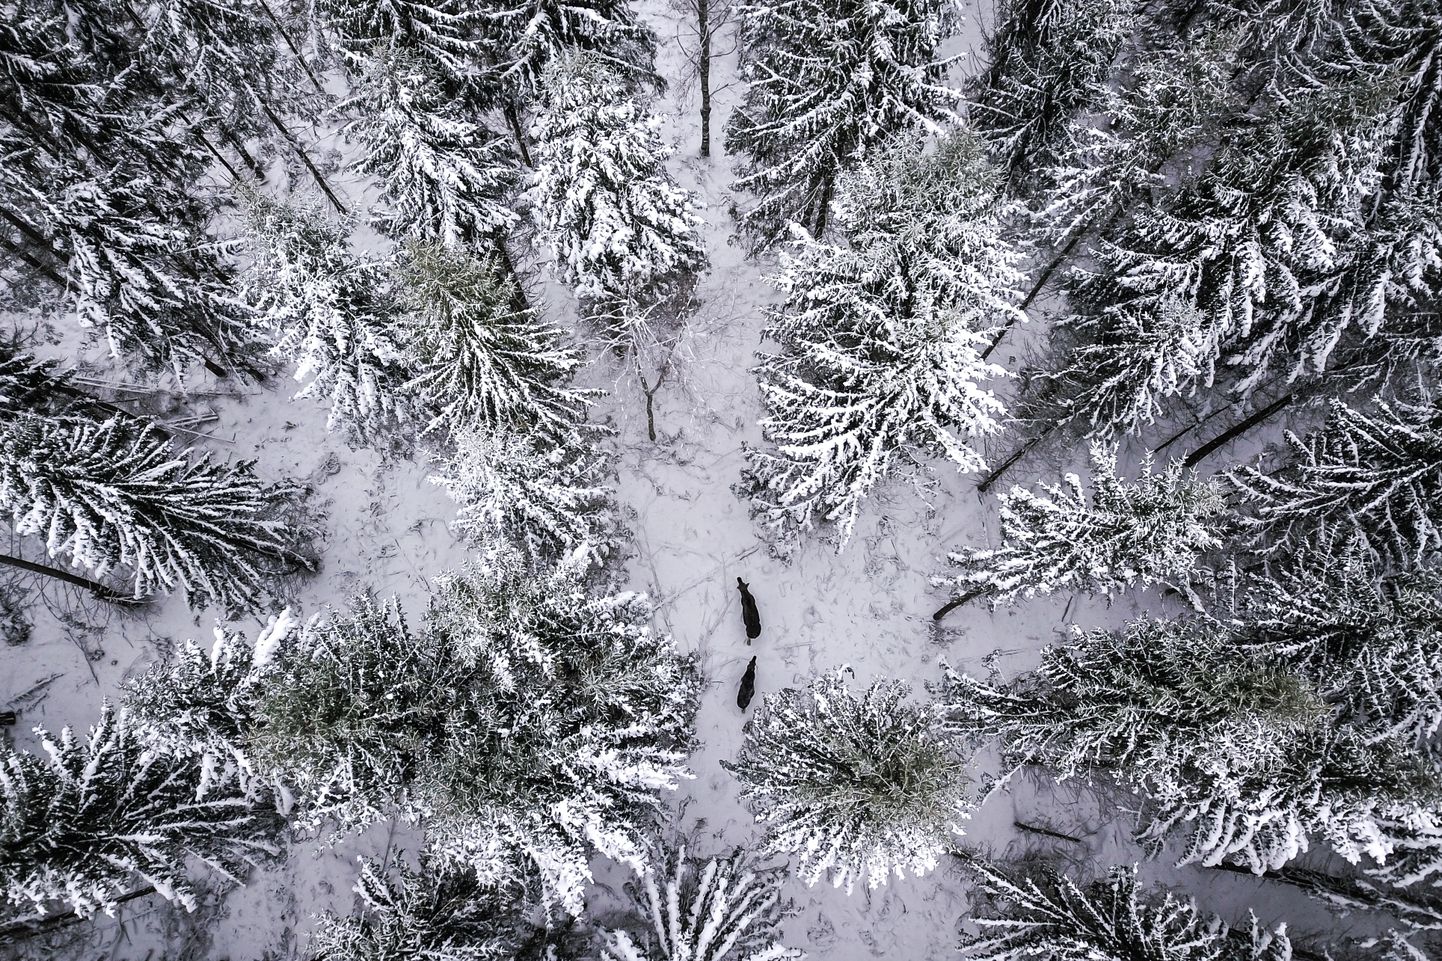 Esialgu paistab lihtne: lendad drooniga metsa kohale ja vaatad, kus loomad on. Tegelikult on neid maastikul väikselt ekraanilt keeruline eristada. Talvises metsasalus on näha kaks põtra, kes andsid endast enne drooni õhkutõusu märku värske jäljereaga.